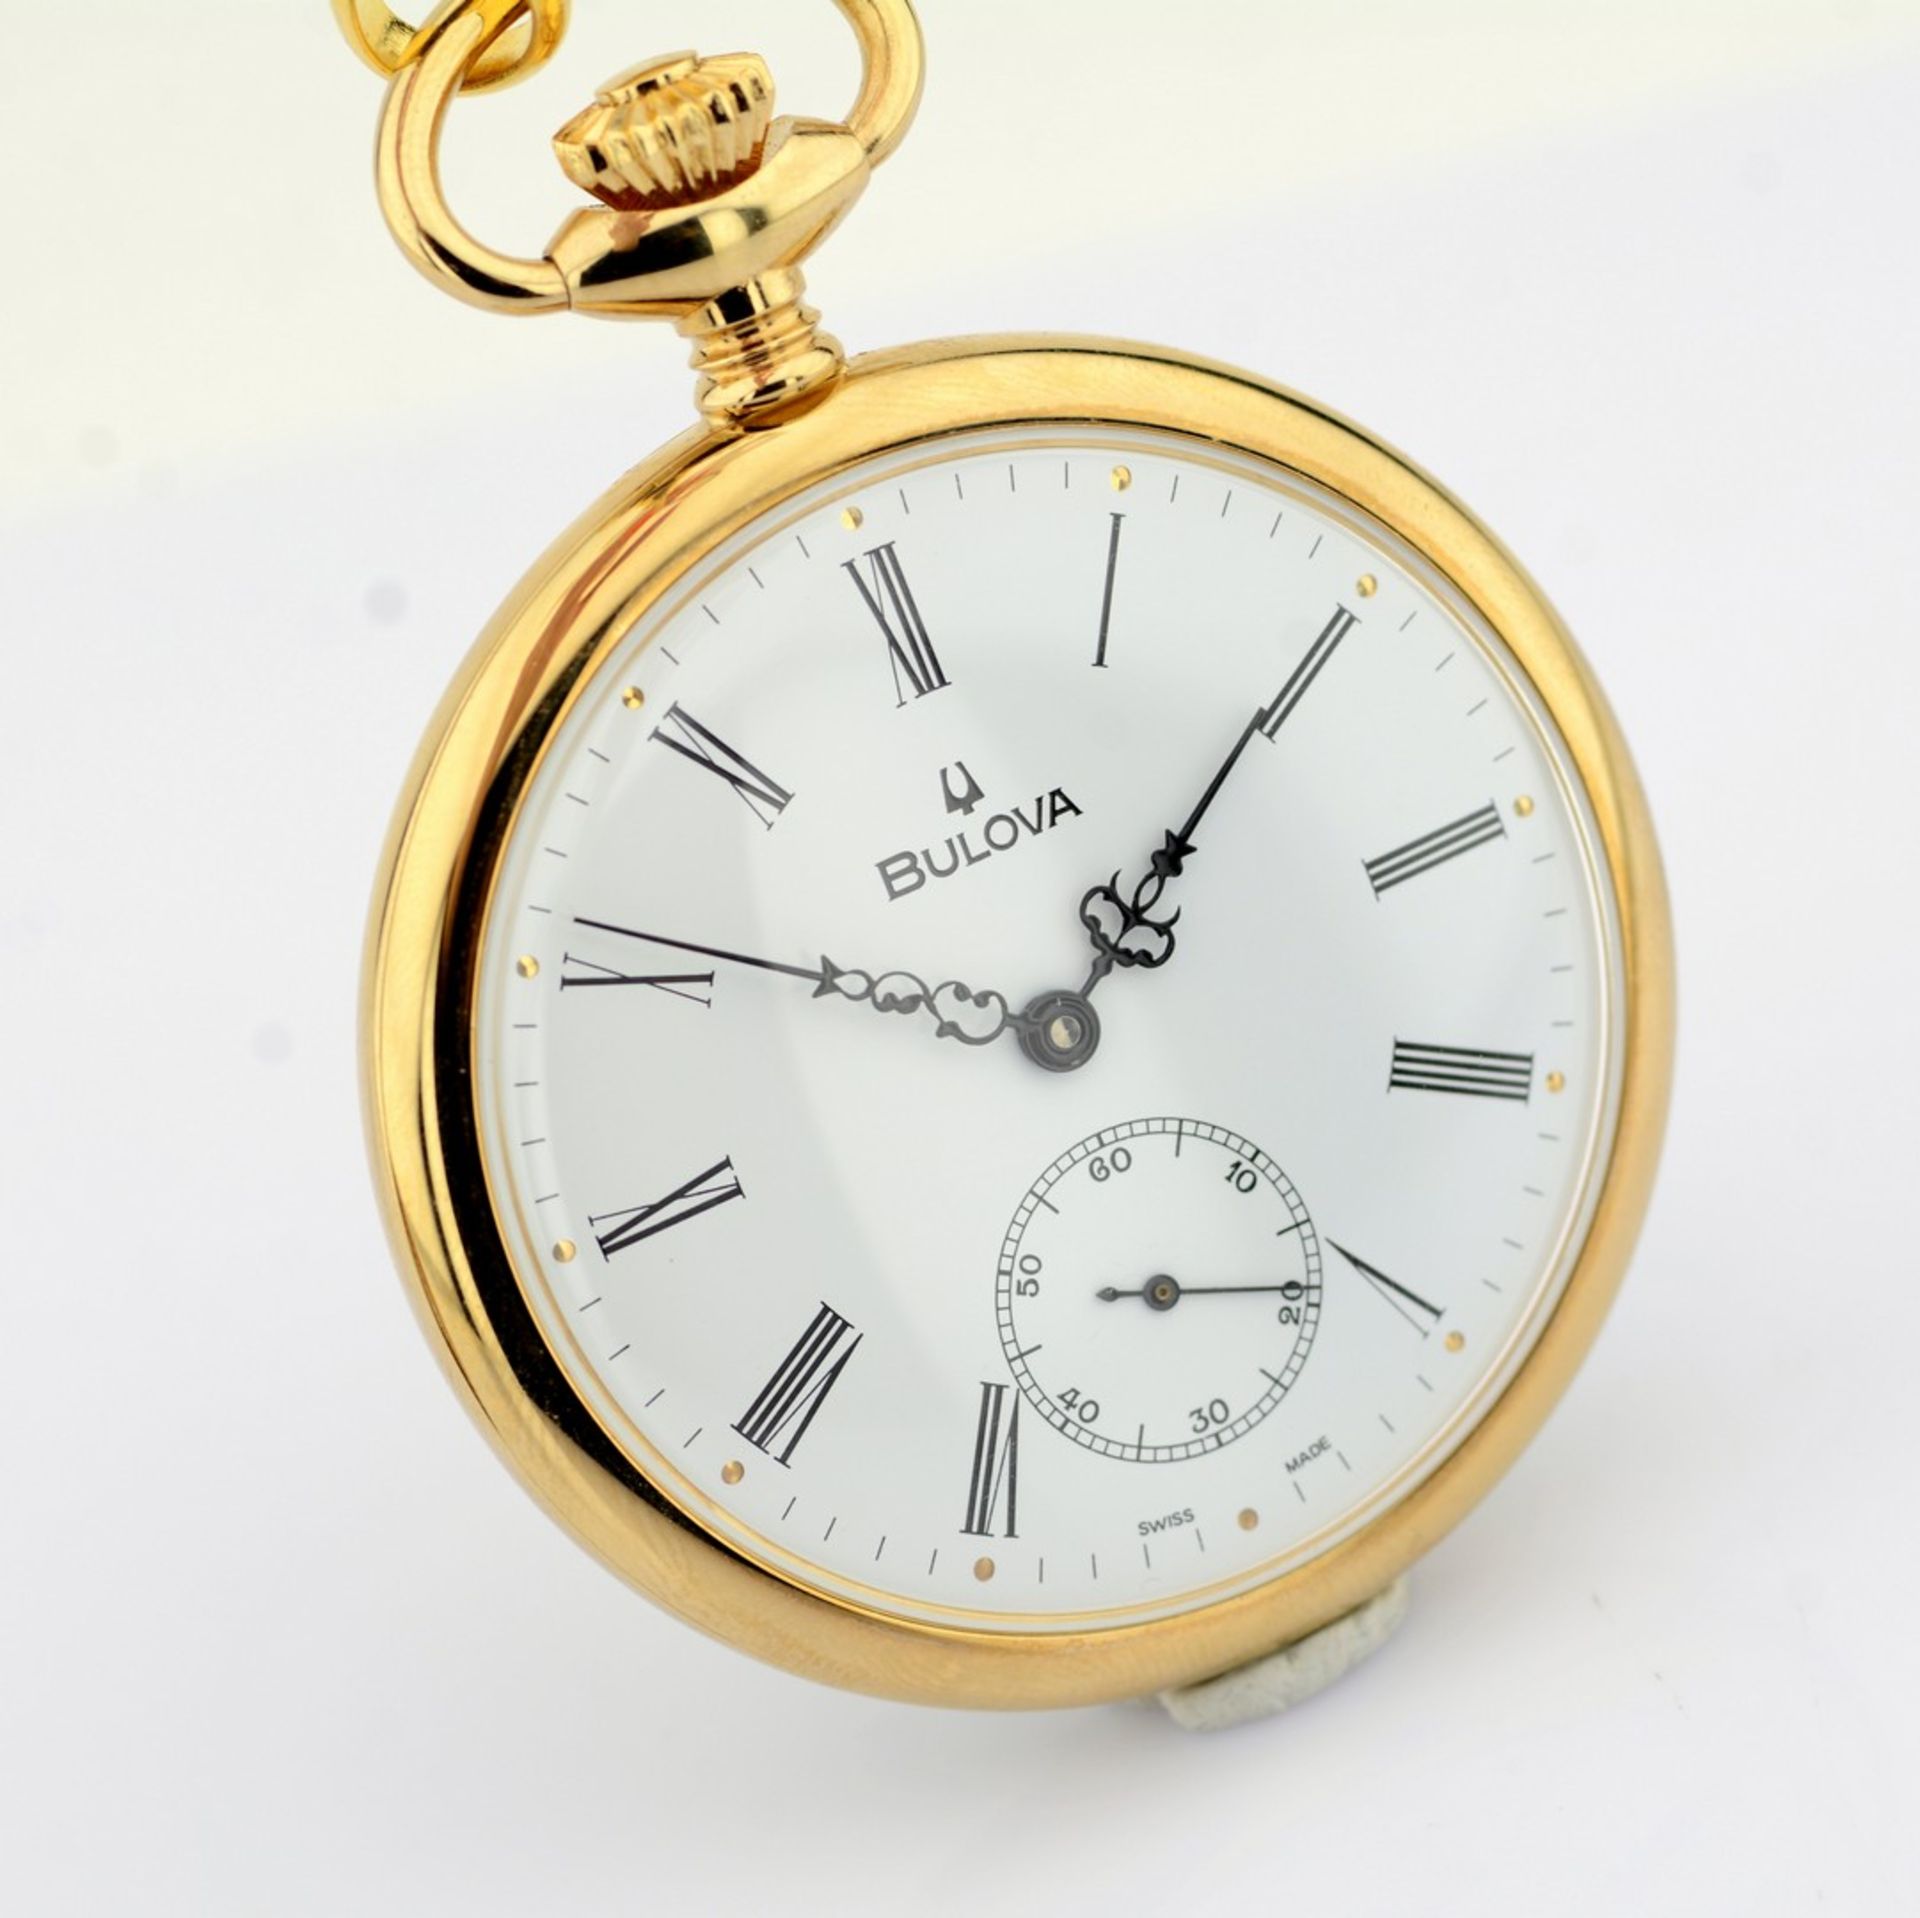 Bulova / Pocket Watch - Gentlmen's Gold/Steel Wrist Watch - Image 5 of 8